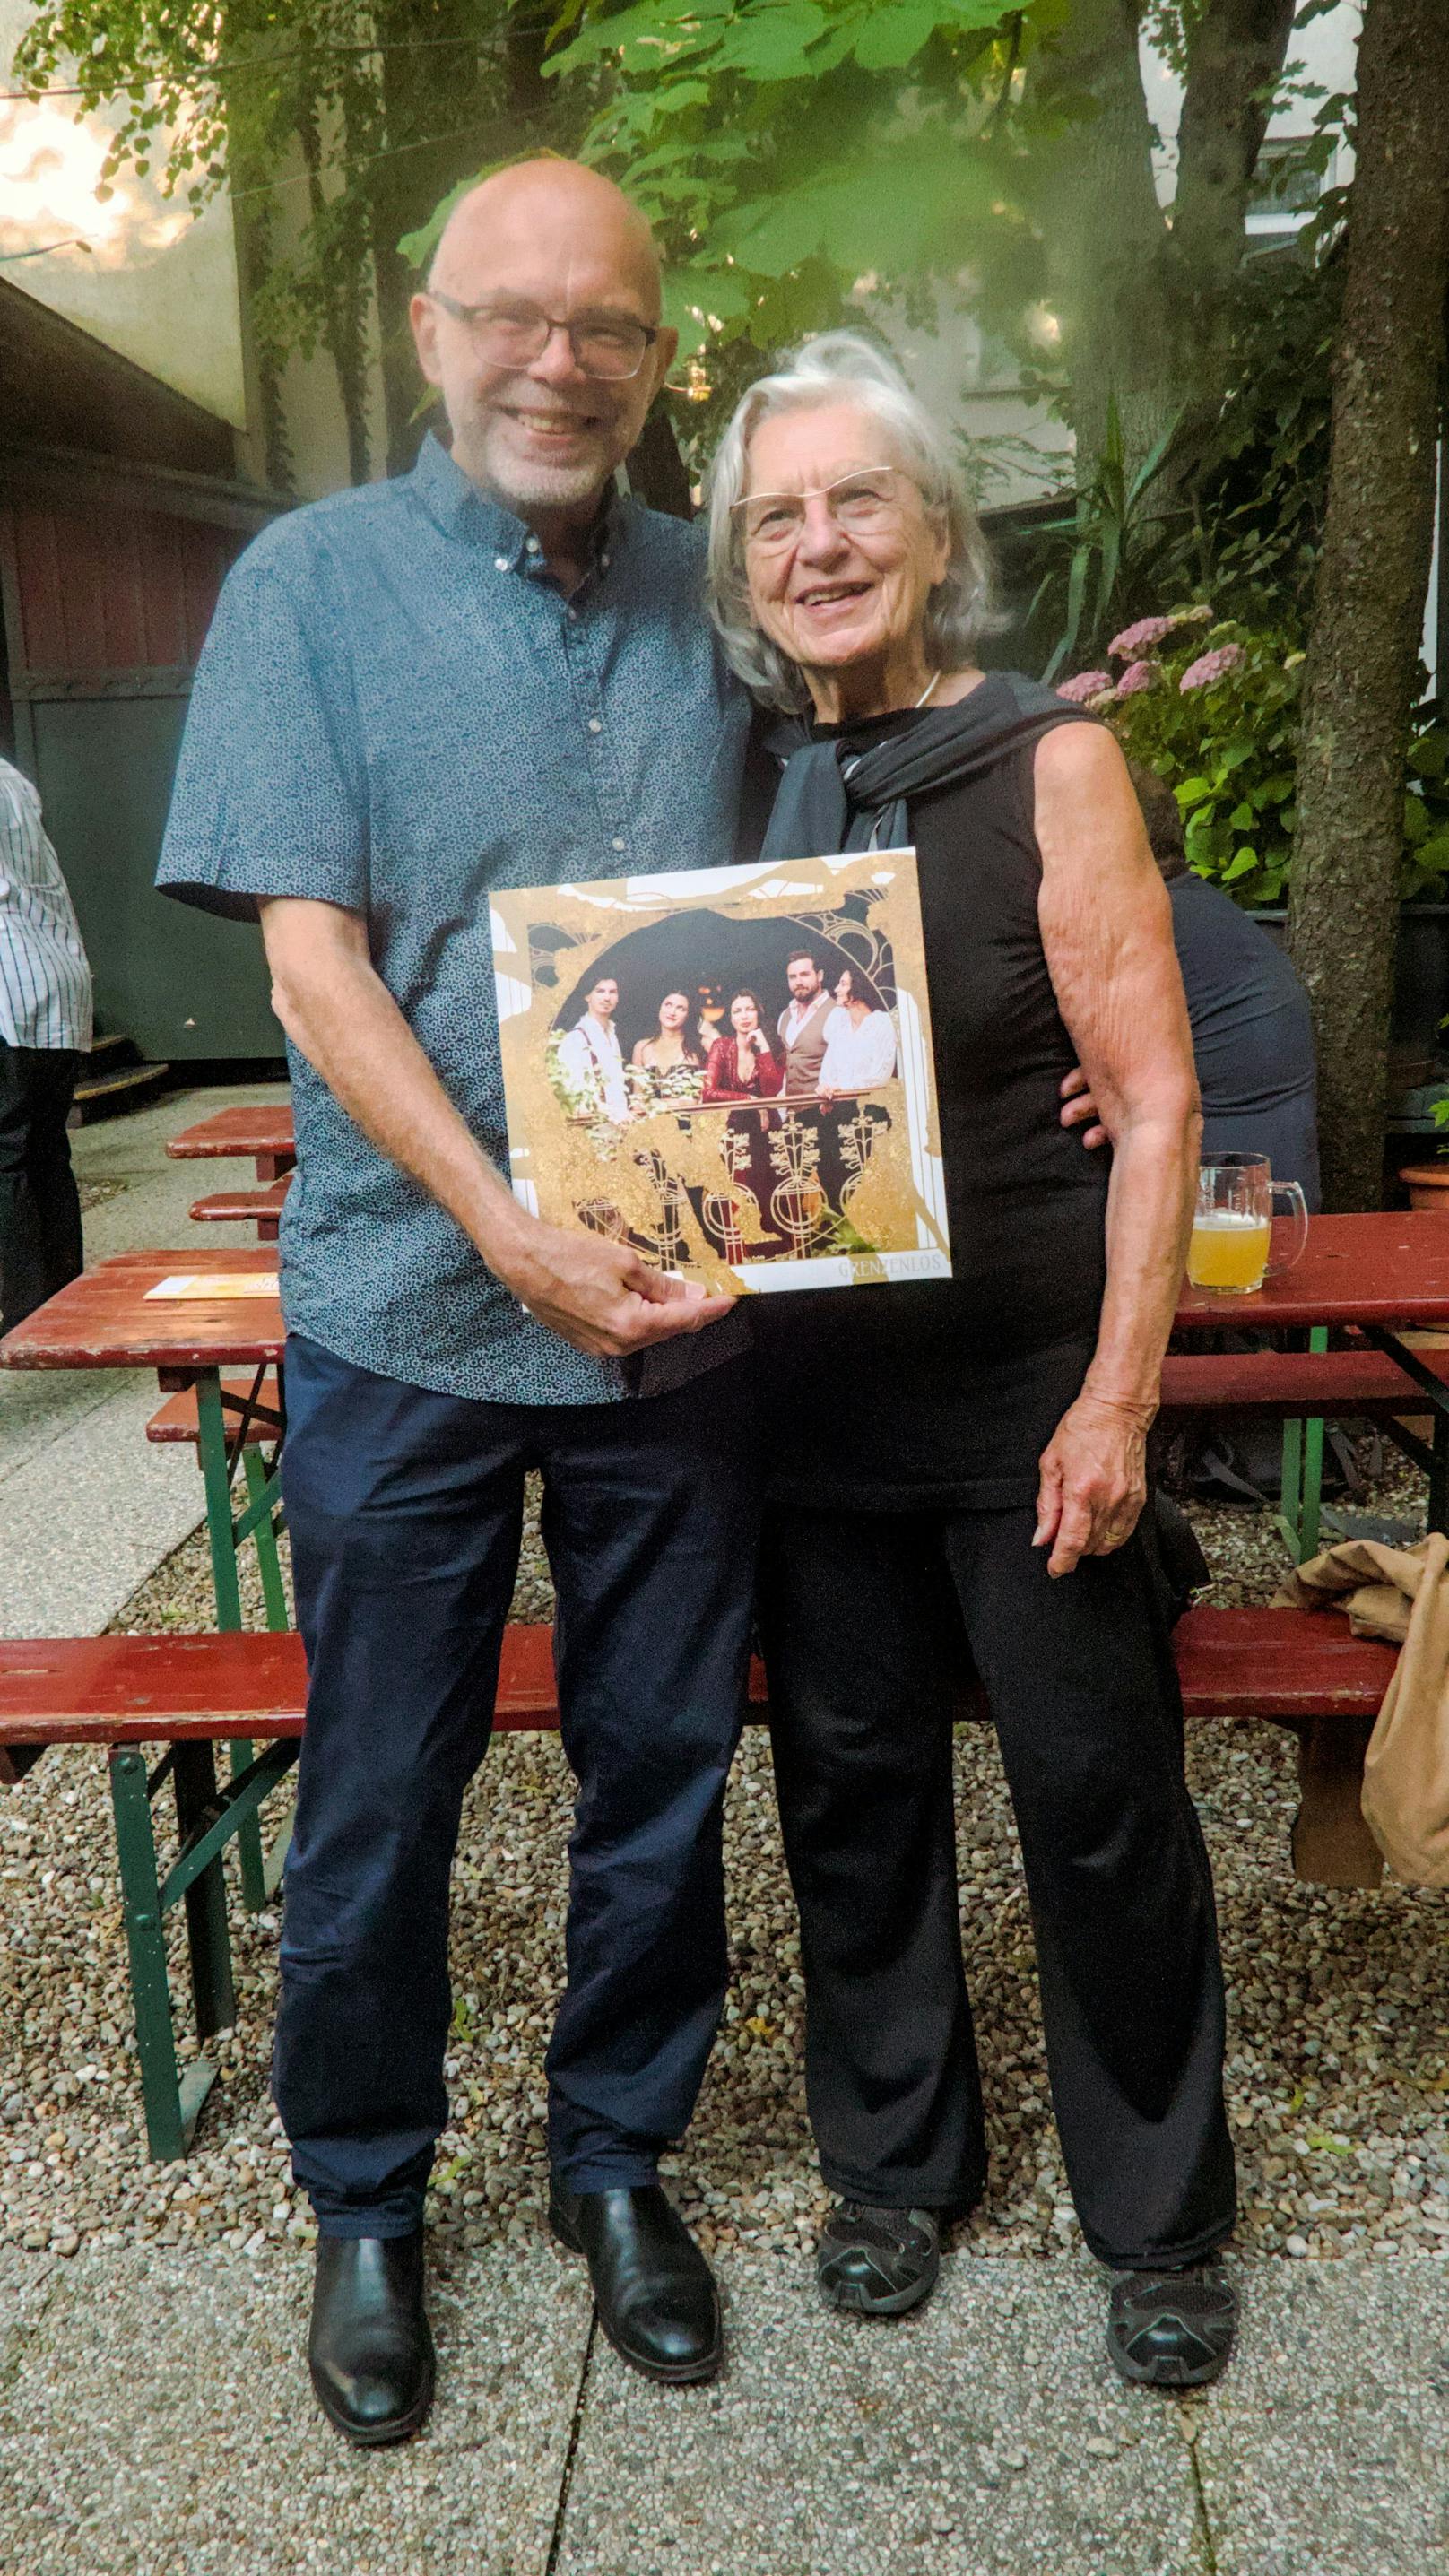 Promoterin Heidi Spatzek und Musikproduzent Mario Rossori mit der Vynil-Ausgabe des neuen Albums "grenzenlos".